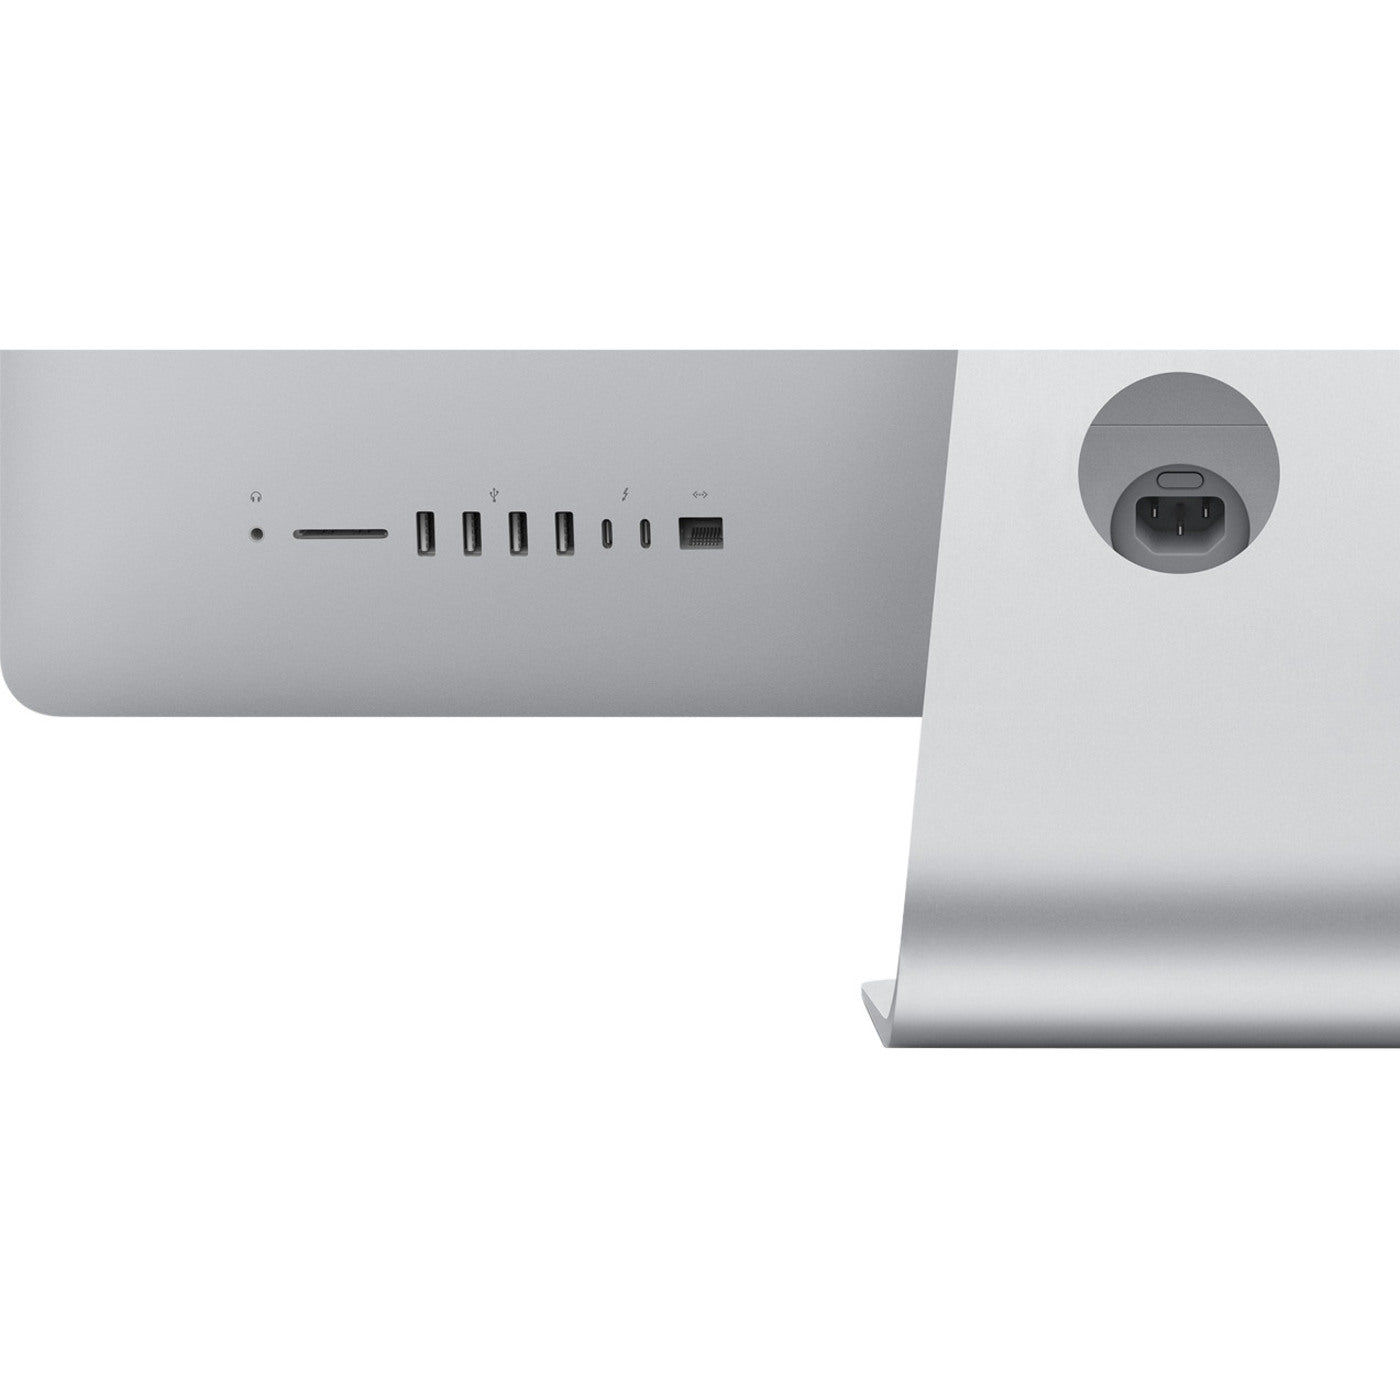 Apple MMQA2LL/A iMac 21.5-inch, 8GB RAM, 1TB HDD, Mac OS Sierra